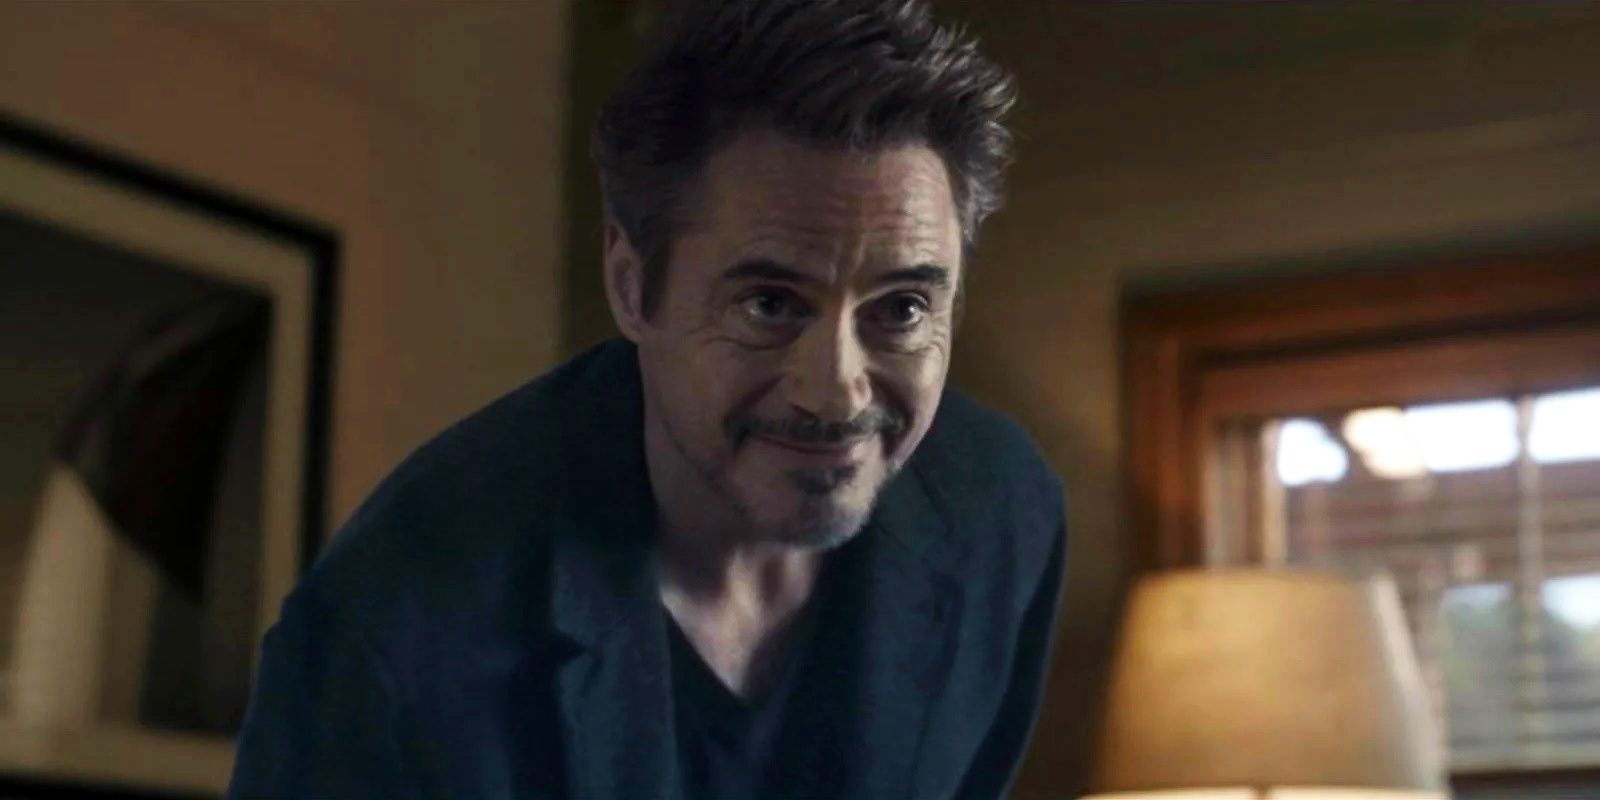 Robert Downey Jr as Tony Stark aka Iron Man in Avengers Endgame